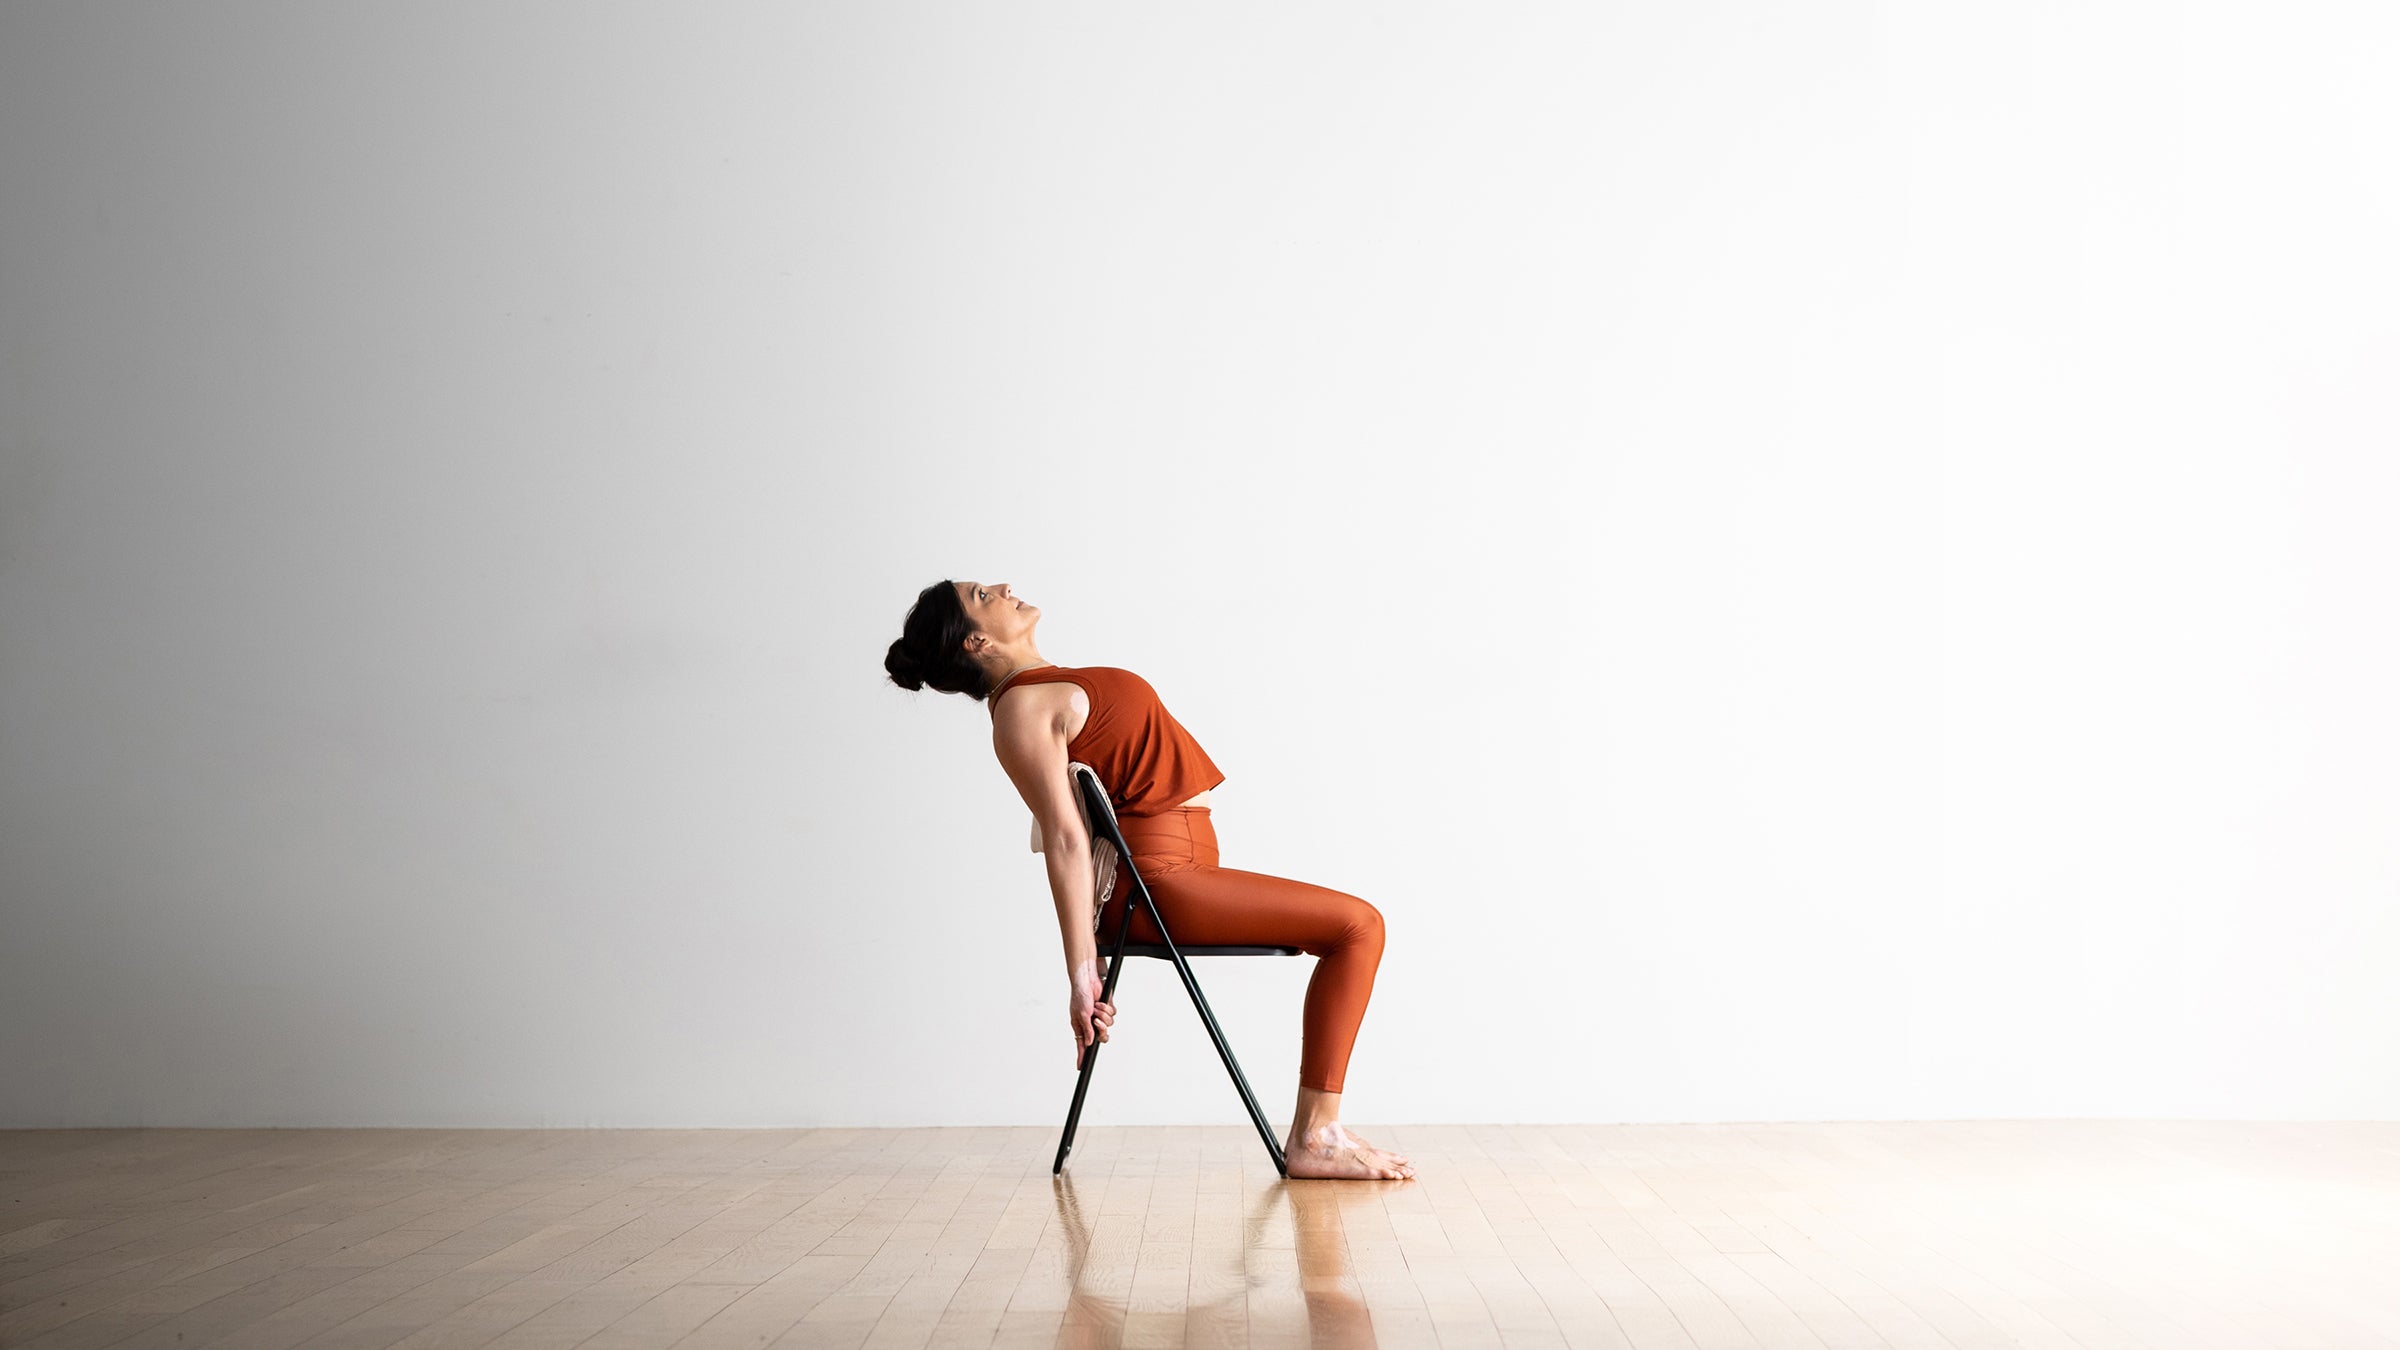 Yoga poses illustration set Black and White Stock Photos & Images - Alamy